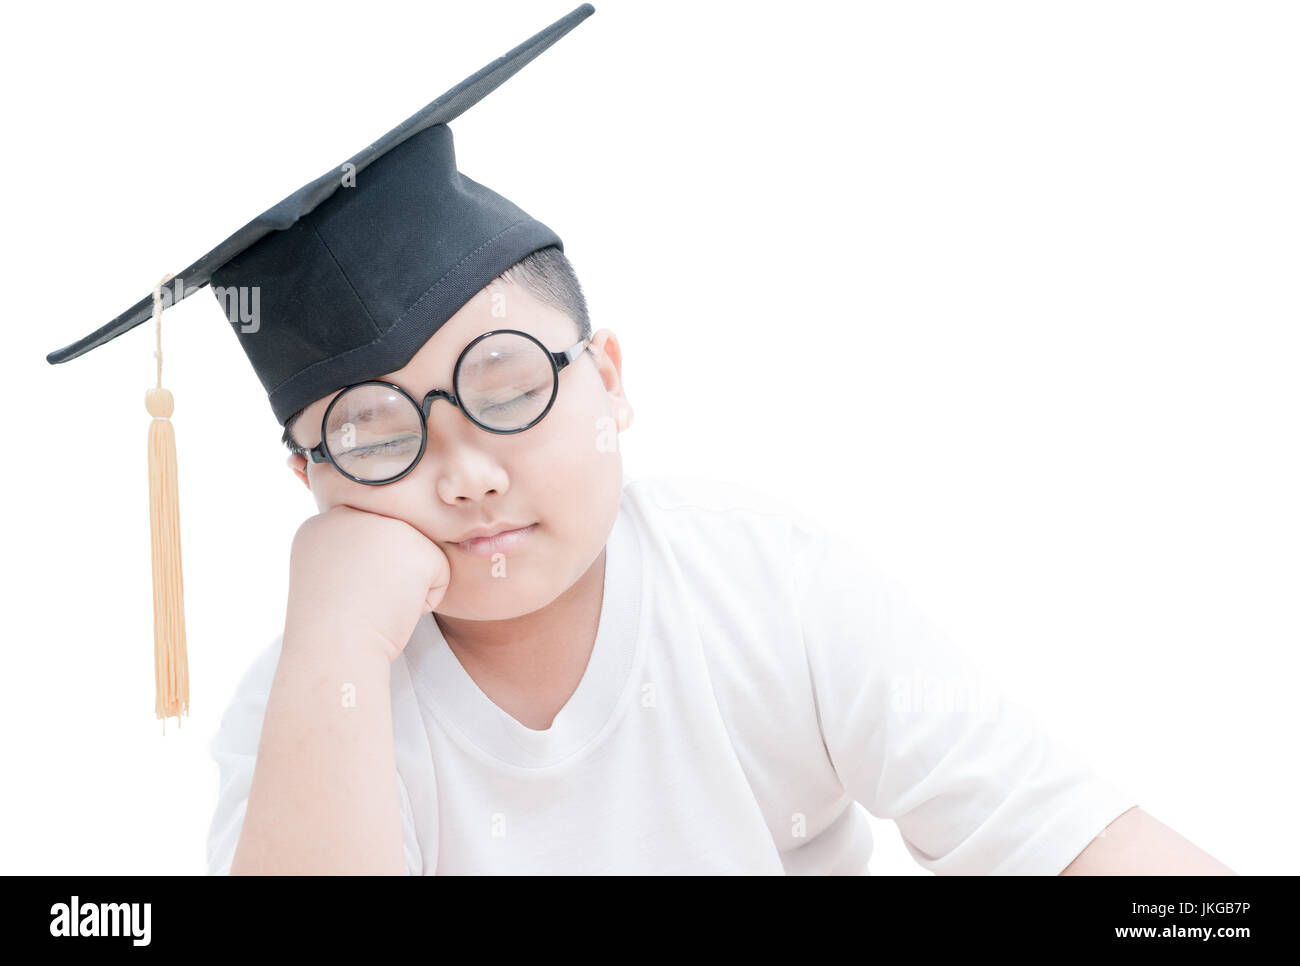 Asiatische Schule Kind graduate Schlaf mit Graduation Cap isoliert auf weißem Hintergrund Stockfoto